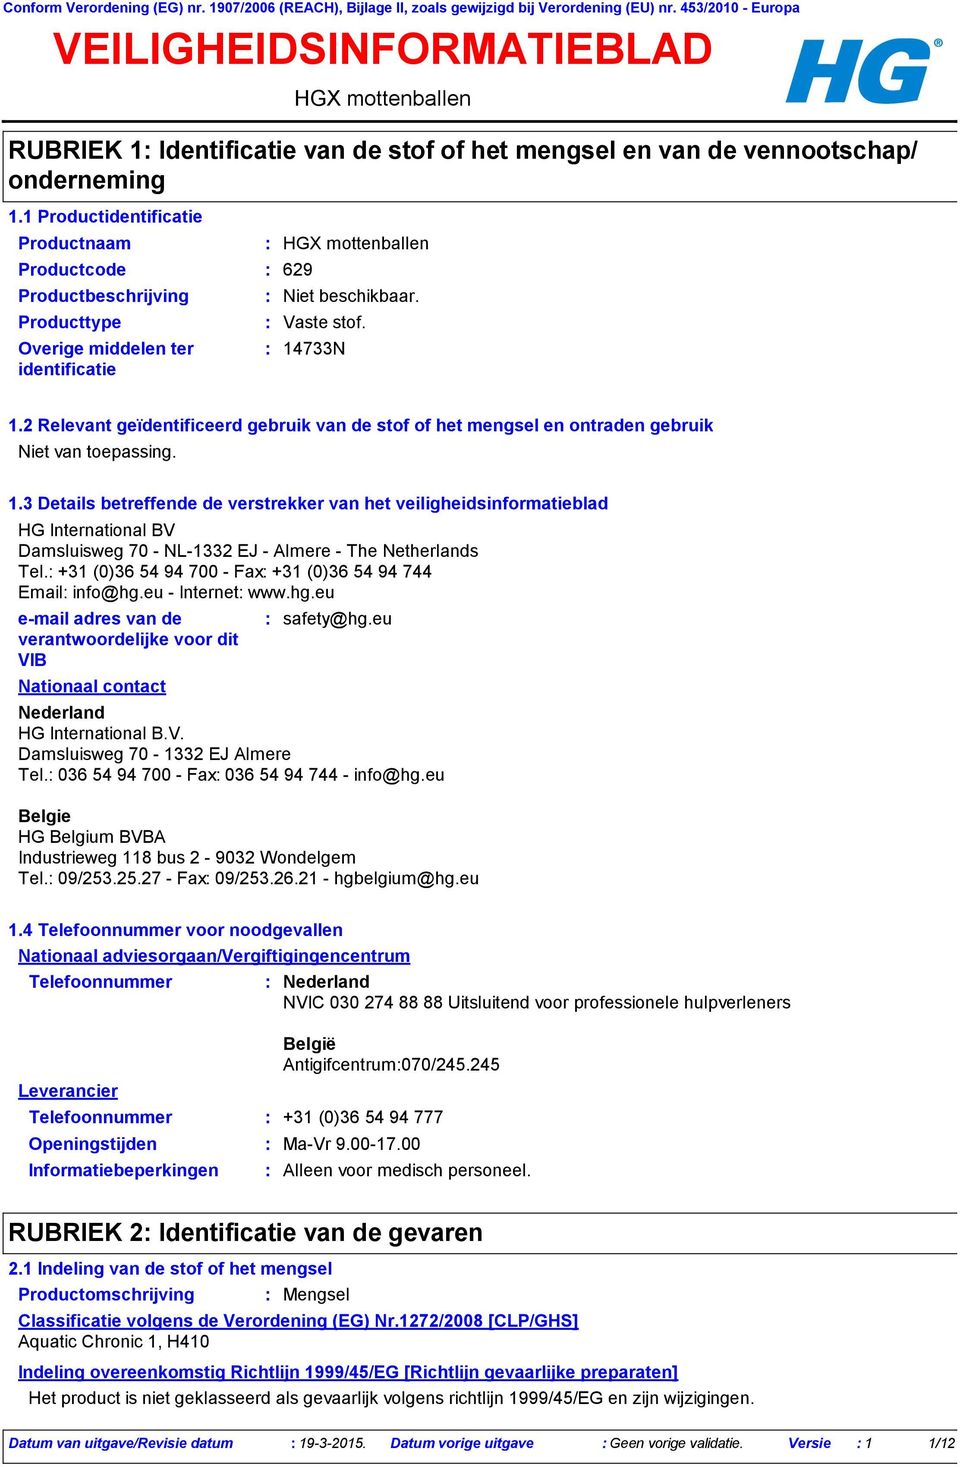 Productcode 629 Vaste stof. 14733N 1.2 Relevant geïdentificeerd gebruik van de stof of het mengsel en ontraden gebruik. 1.3 Details betreffende de verstrekker van het veiligheidsinformatieblad HG International BV Damsluisweg 70 - NL-1332 EJ - Almere - The Netherlands Tel.